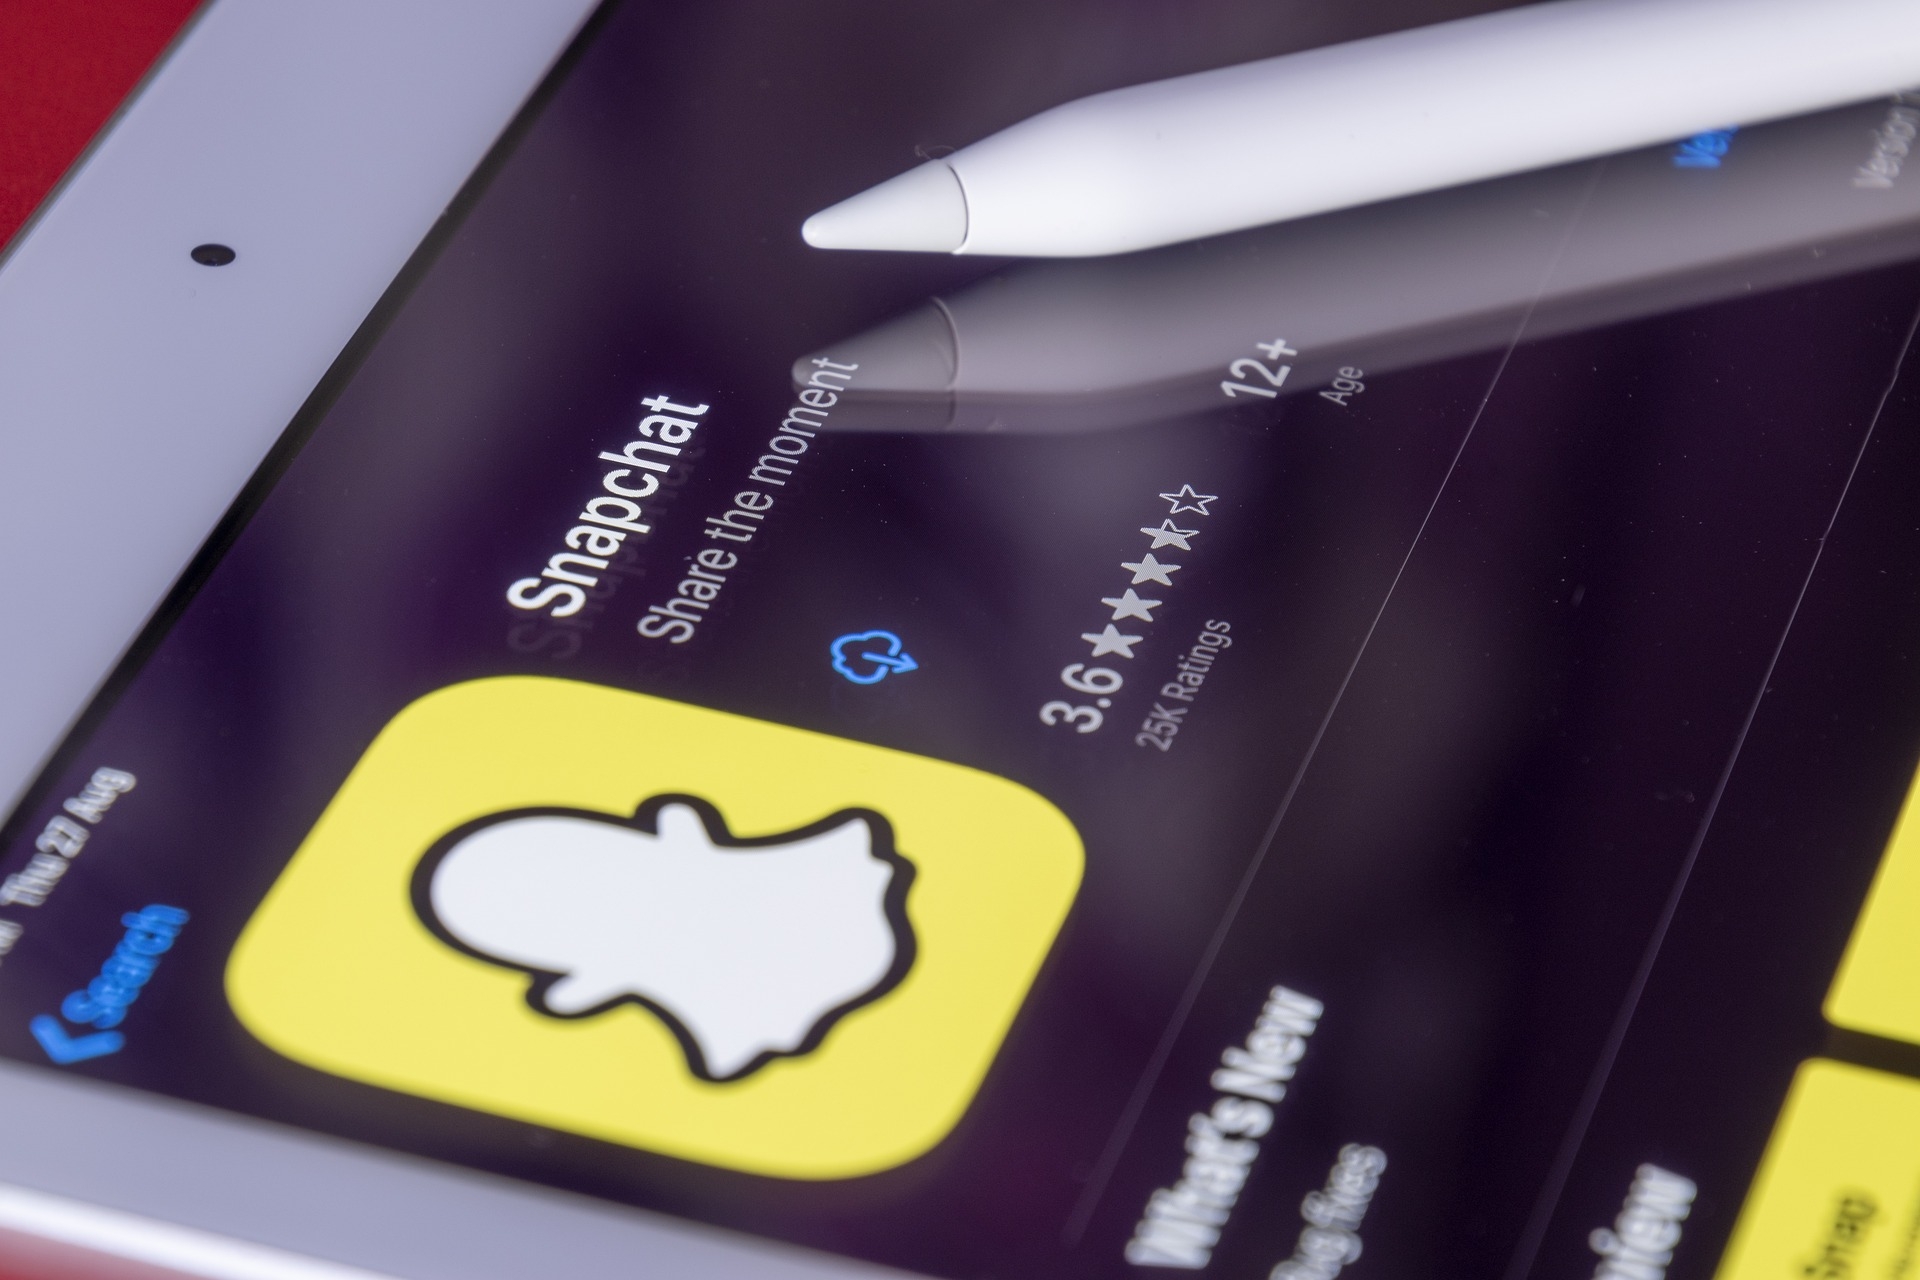 My AI: la caratteristica principale di Snapchat è consentire agli utenti della propria rete di inviare messaggi di testo, foto e video visualizzabili solo per 24 ore